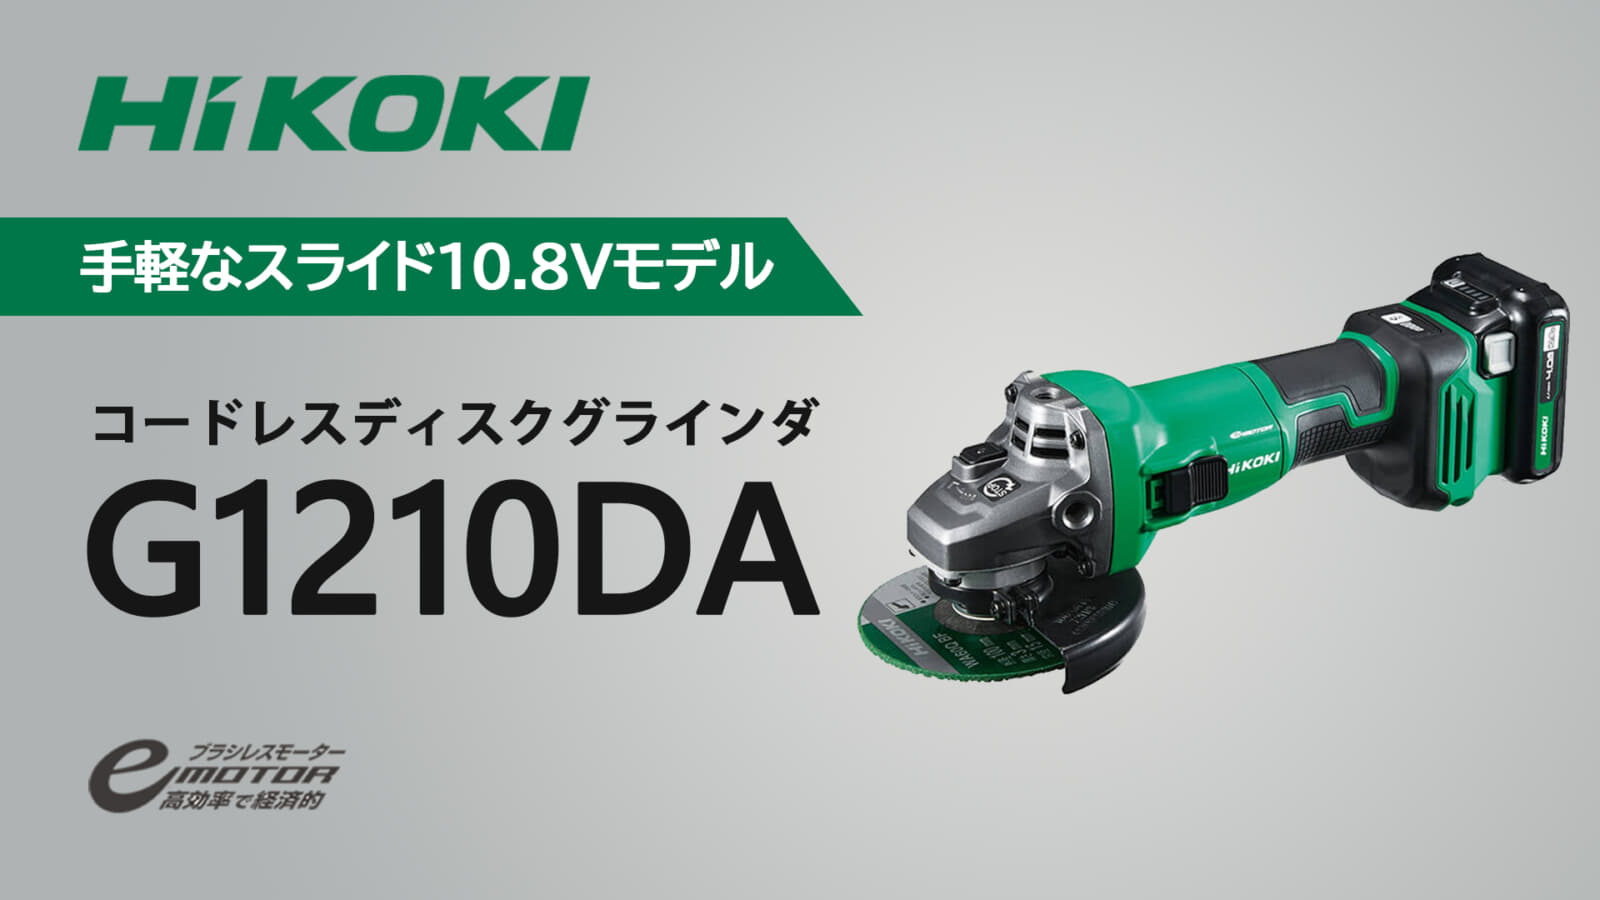 HiKOKI G1210DA コードレスディスクグラインダを発売、コンパクトな 